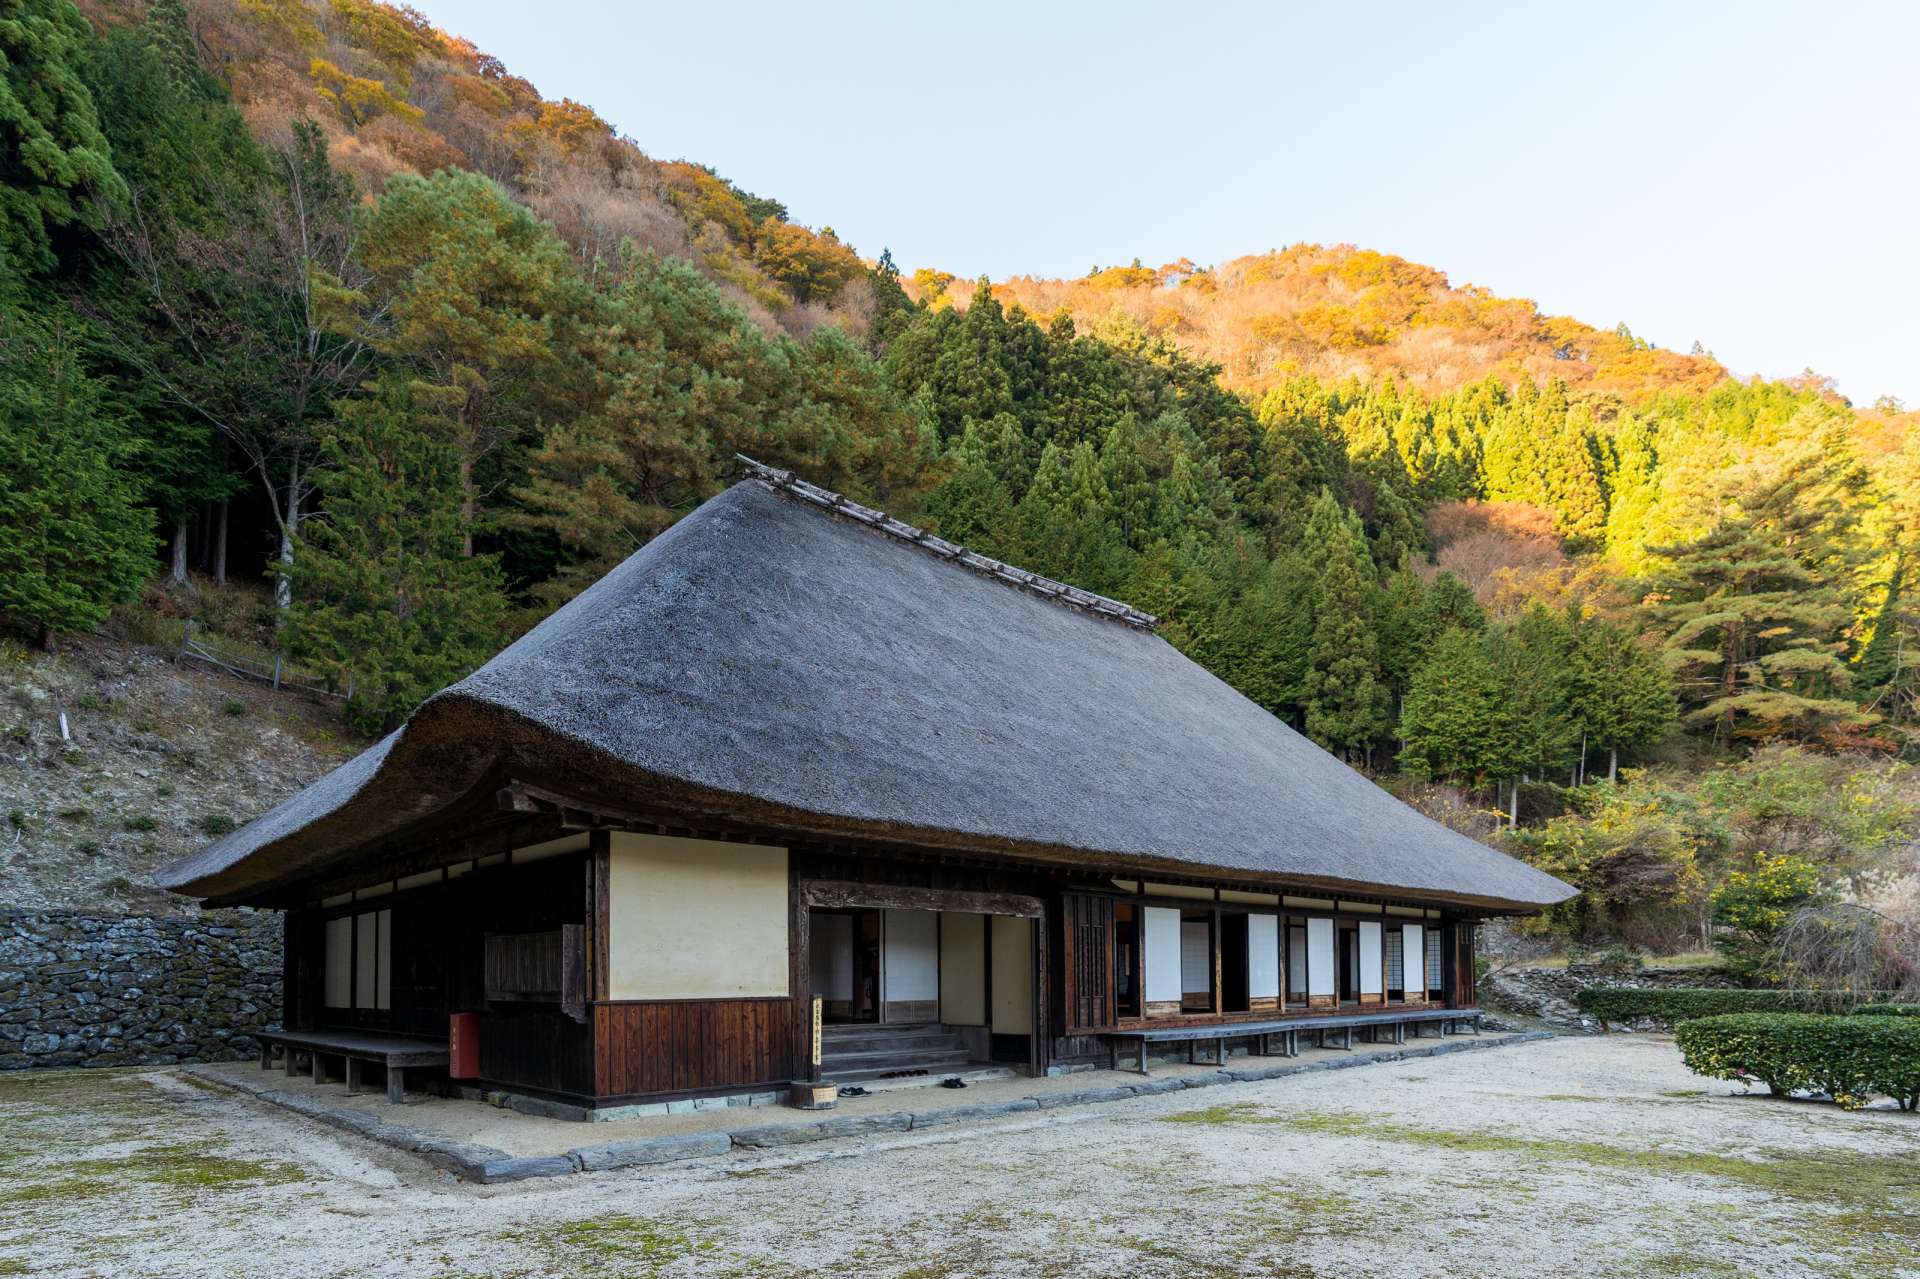 Ancienne résidence des samouraïs de la famille Kita. Aspect majestueux impressionnant avec toit de chaume